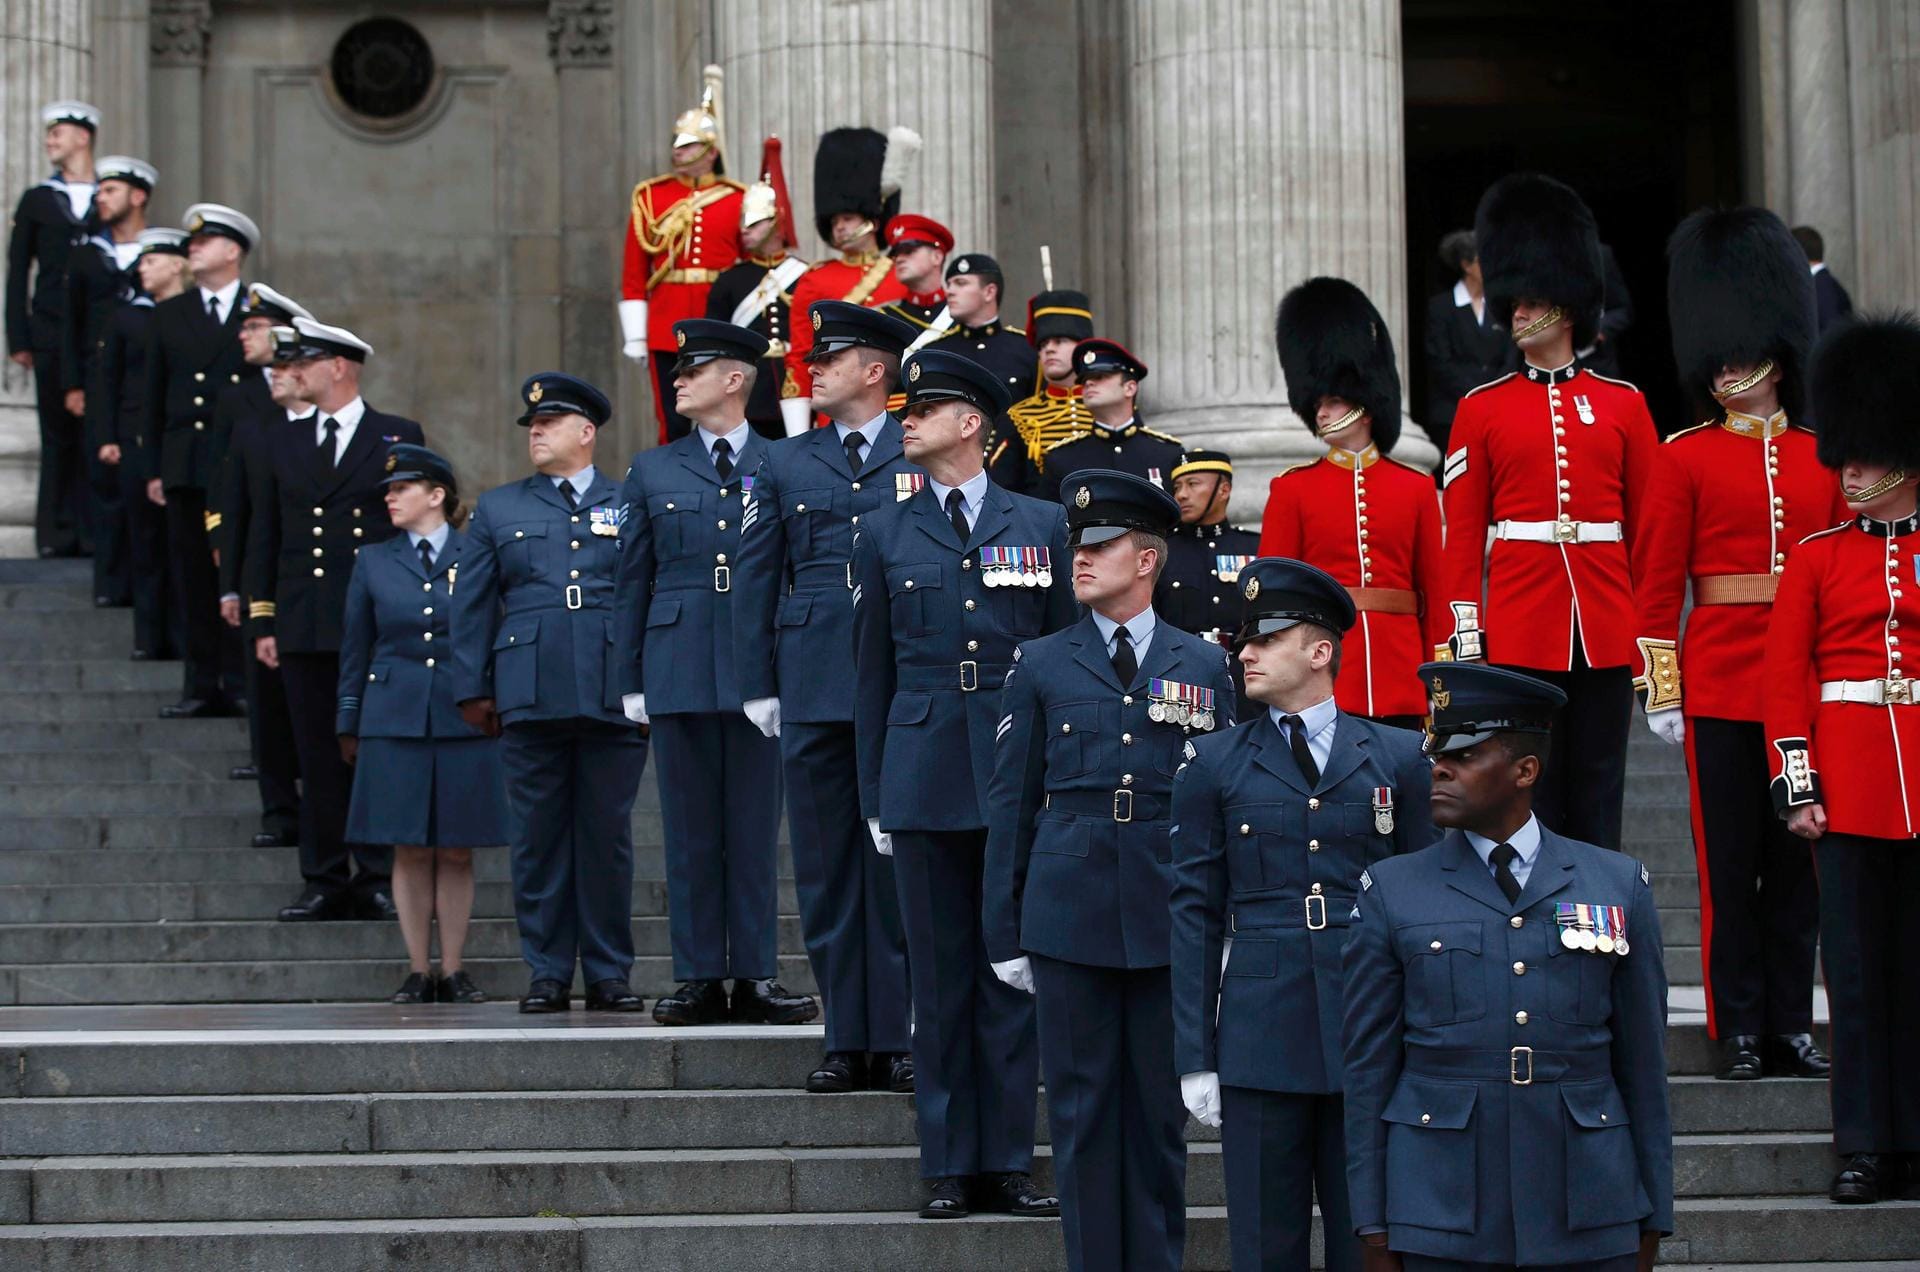 Großer Bahnhof für die Queen: Am Freitag, 10. Juni 2016, begannen die dreitägigen Feierlichkeiten zu Elizabeths 90. Geburtstag in London. Mitglieder der Streitkräfte säumten die Stufen vor der St. Paul's Cathedral, in der ein Dankgottesdienst stattfand.